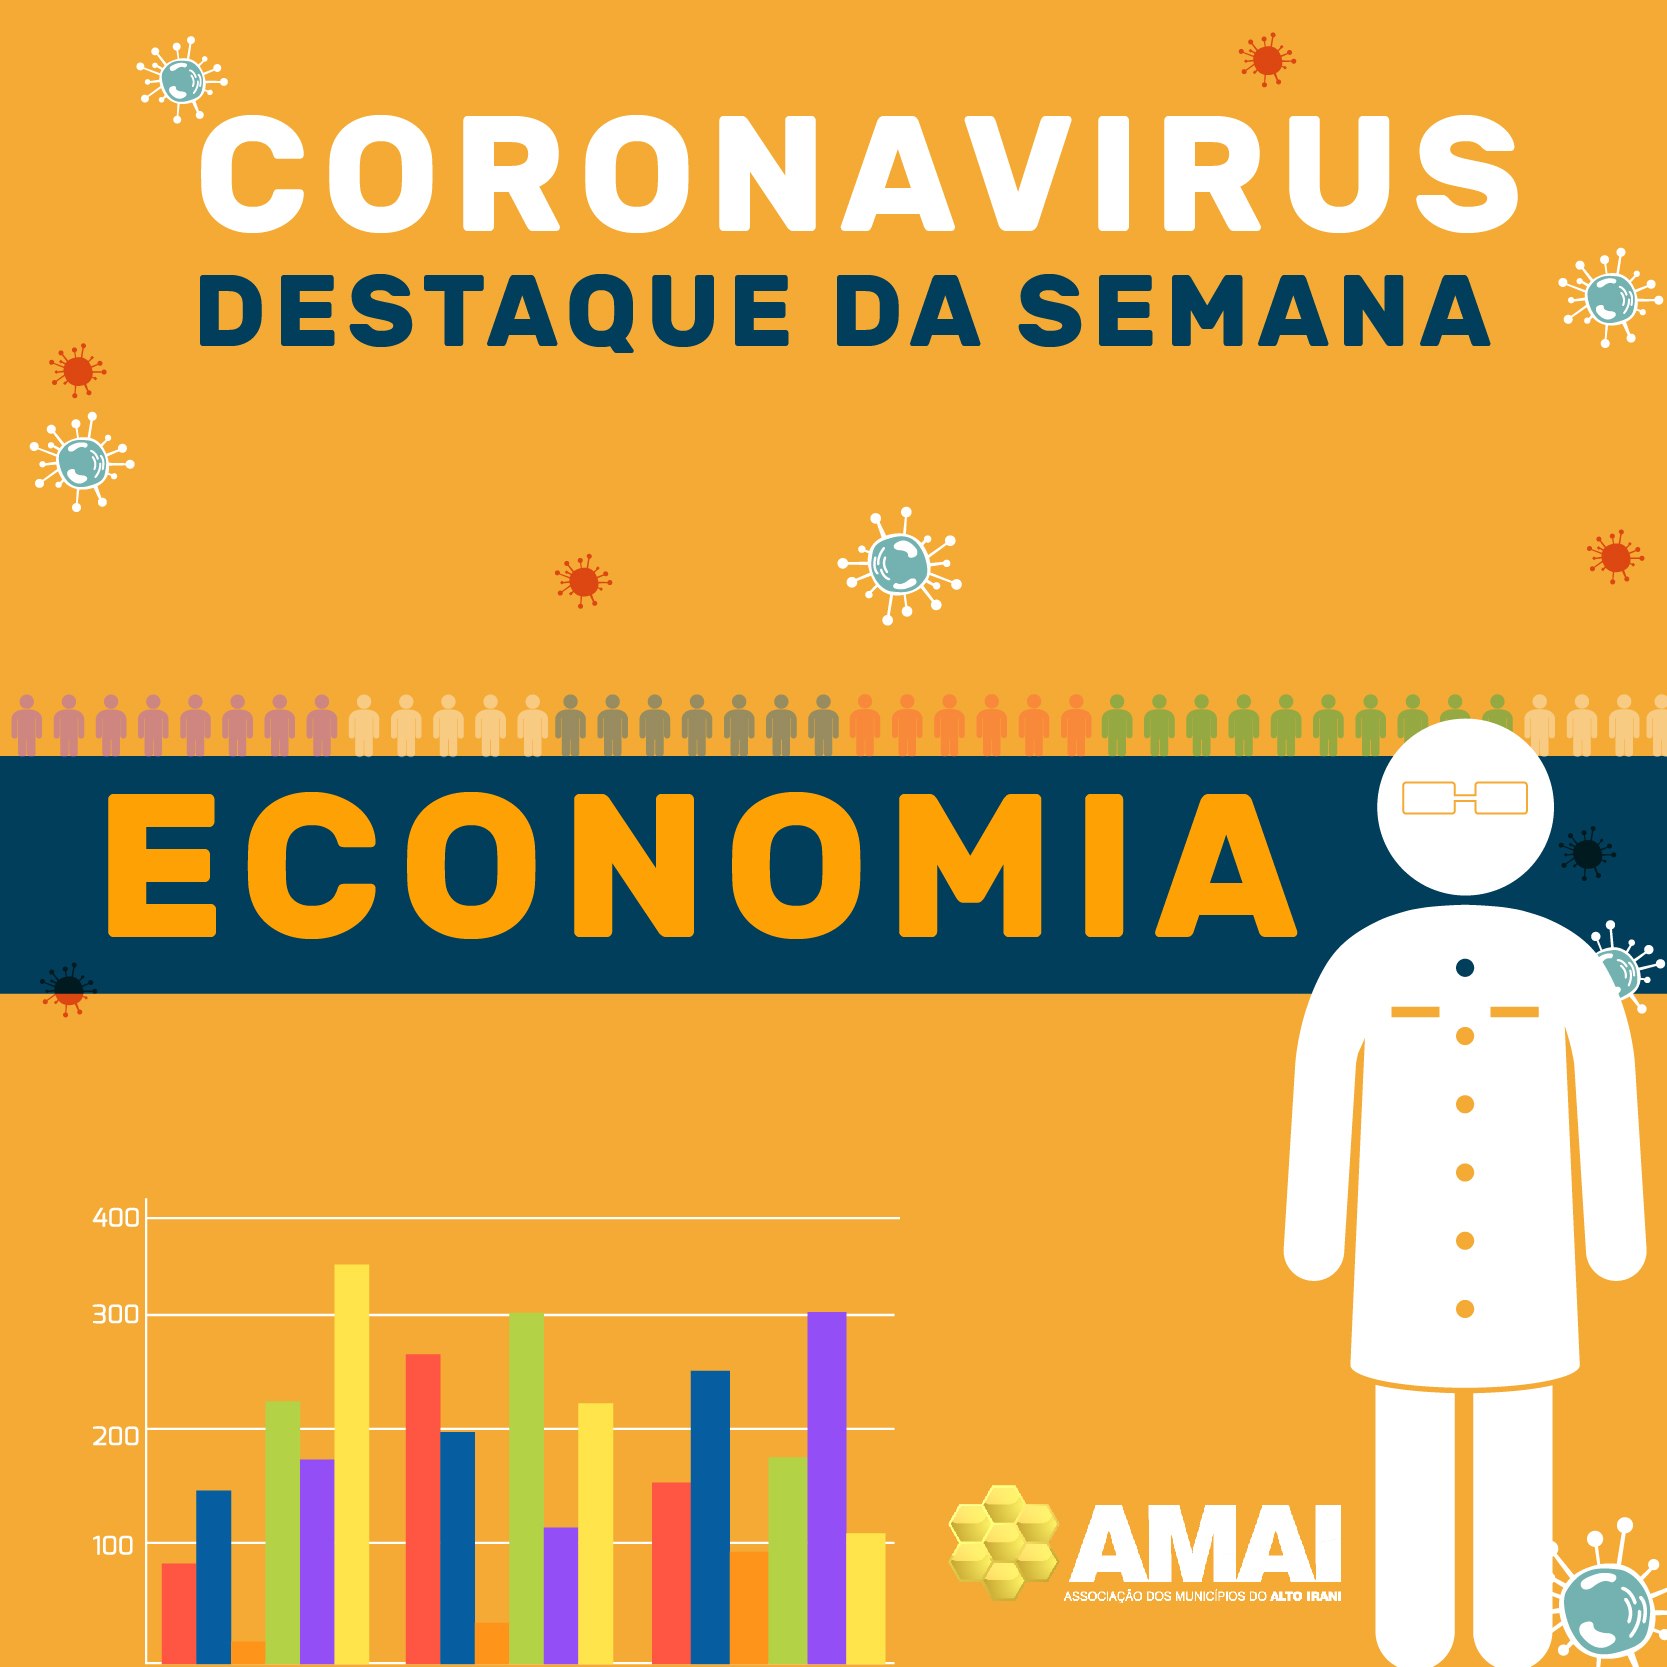 You are currently viewing CORONAVÍRUS – Confira o que foi destaque nesta semana na área da Economia